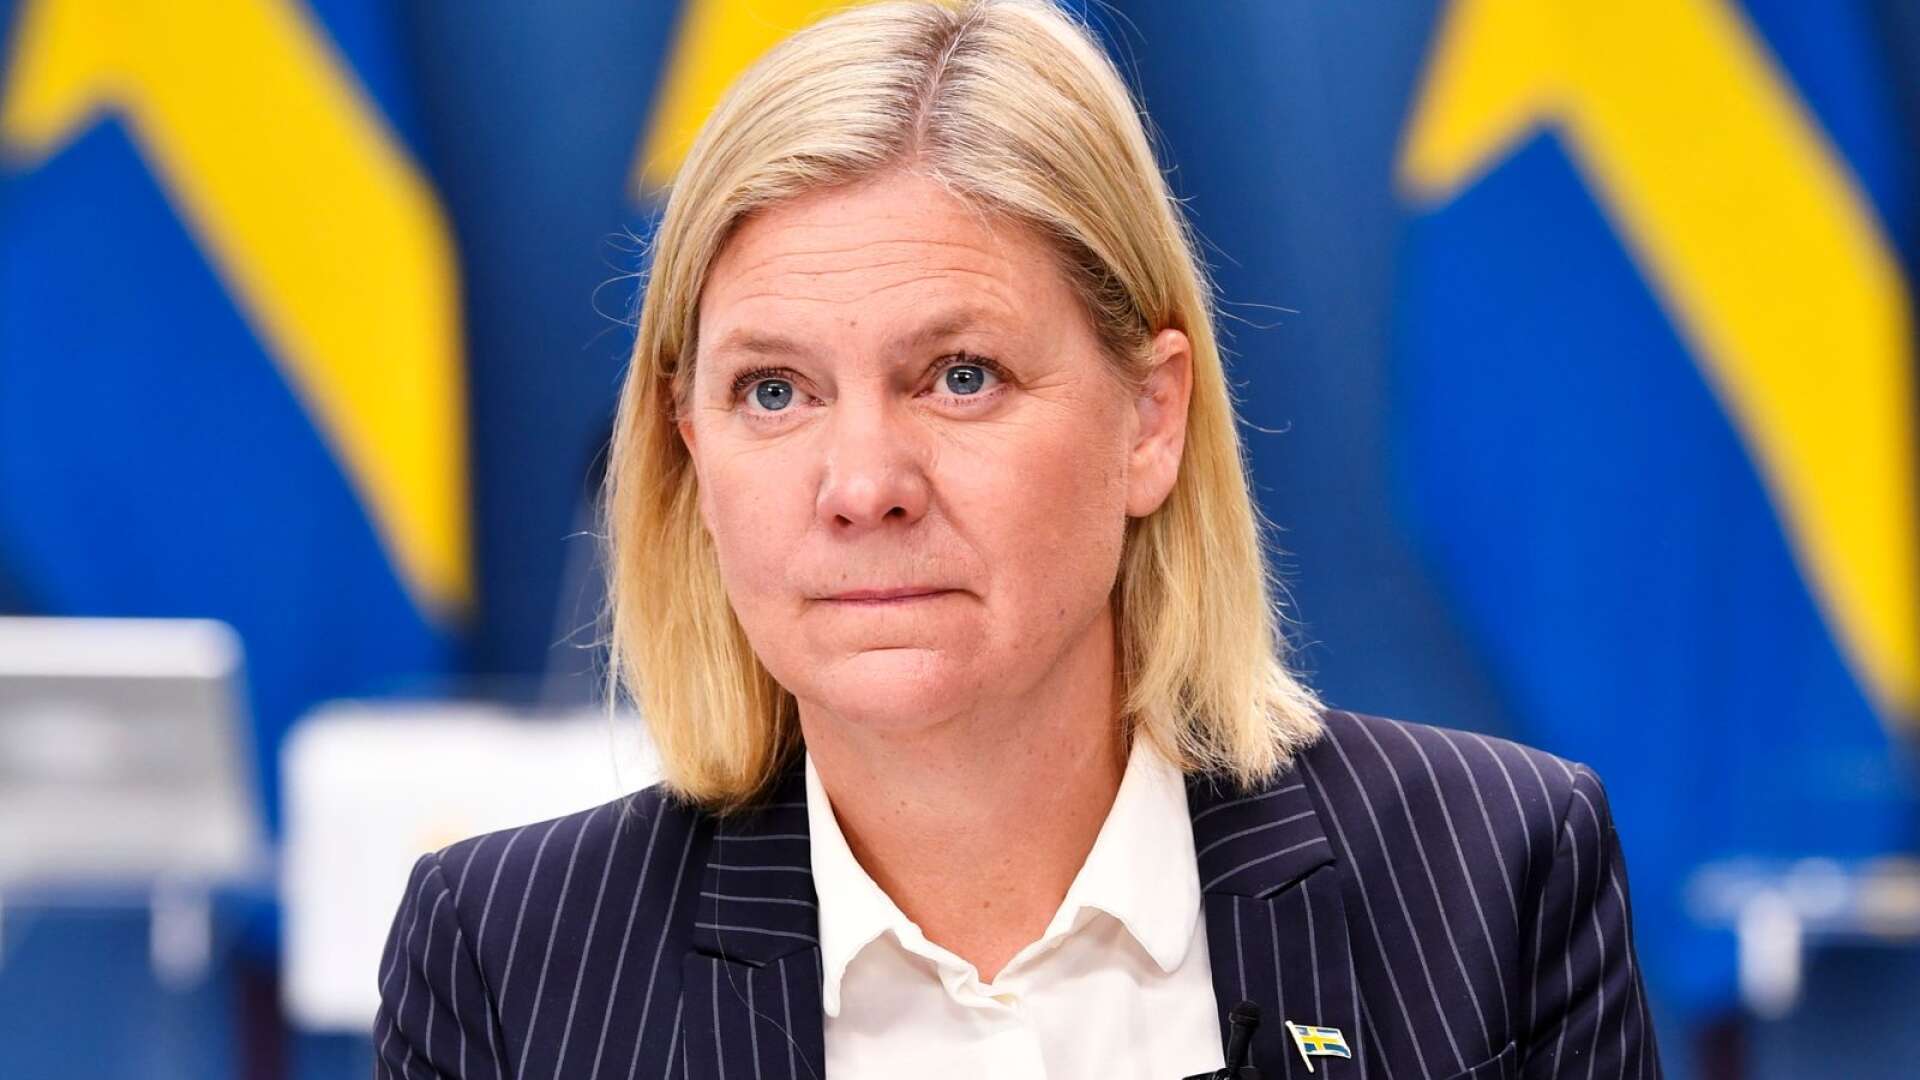 Flera socialdemokratiska partidistrikt har hunnit bestämma sig för vem de vill se som nästa partiordförande och alla har de lagt sin röst på Magdalena Andersson, som fortfarande faktiskt inte ens erkänt öppet att hon kandiderar. Det är en besynnerlig ordning. 
 